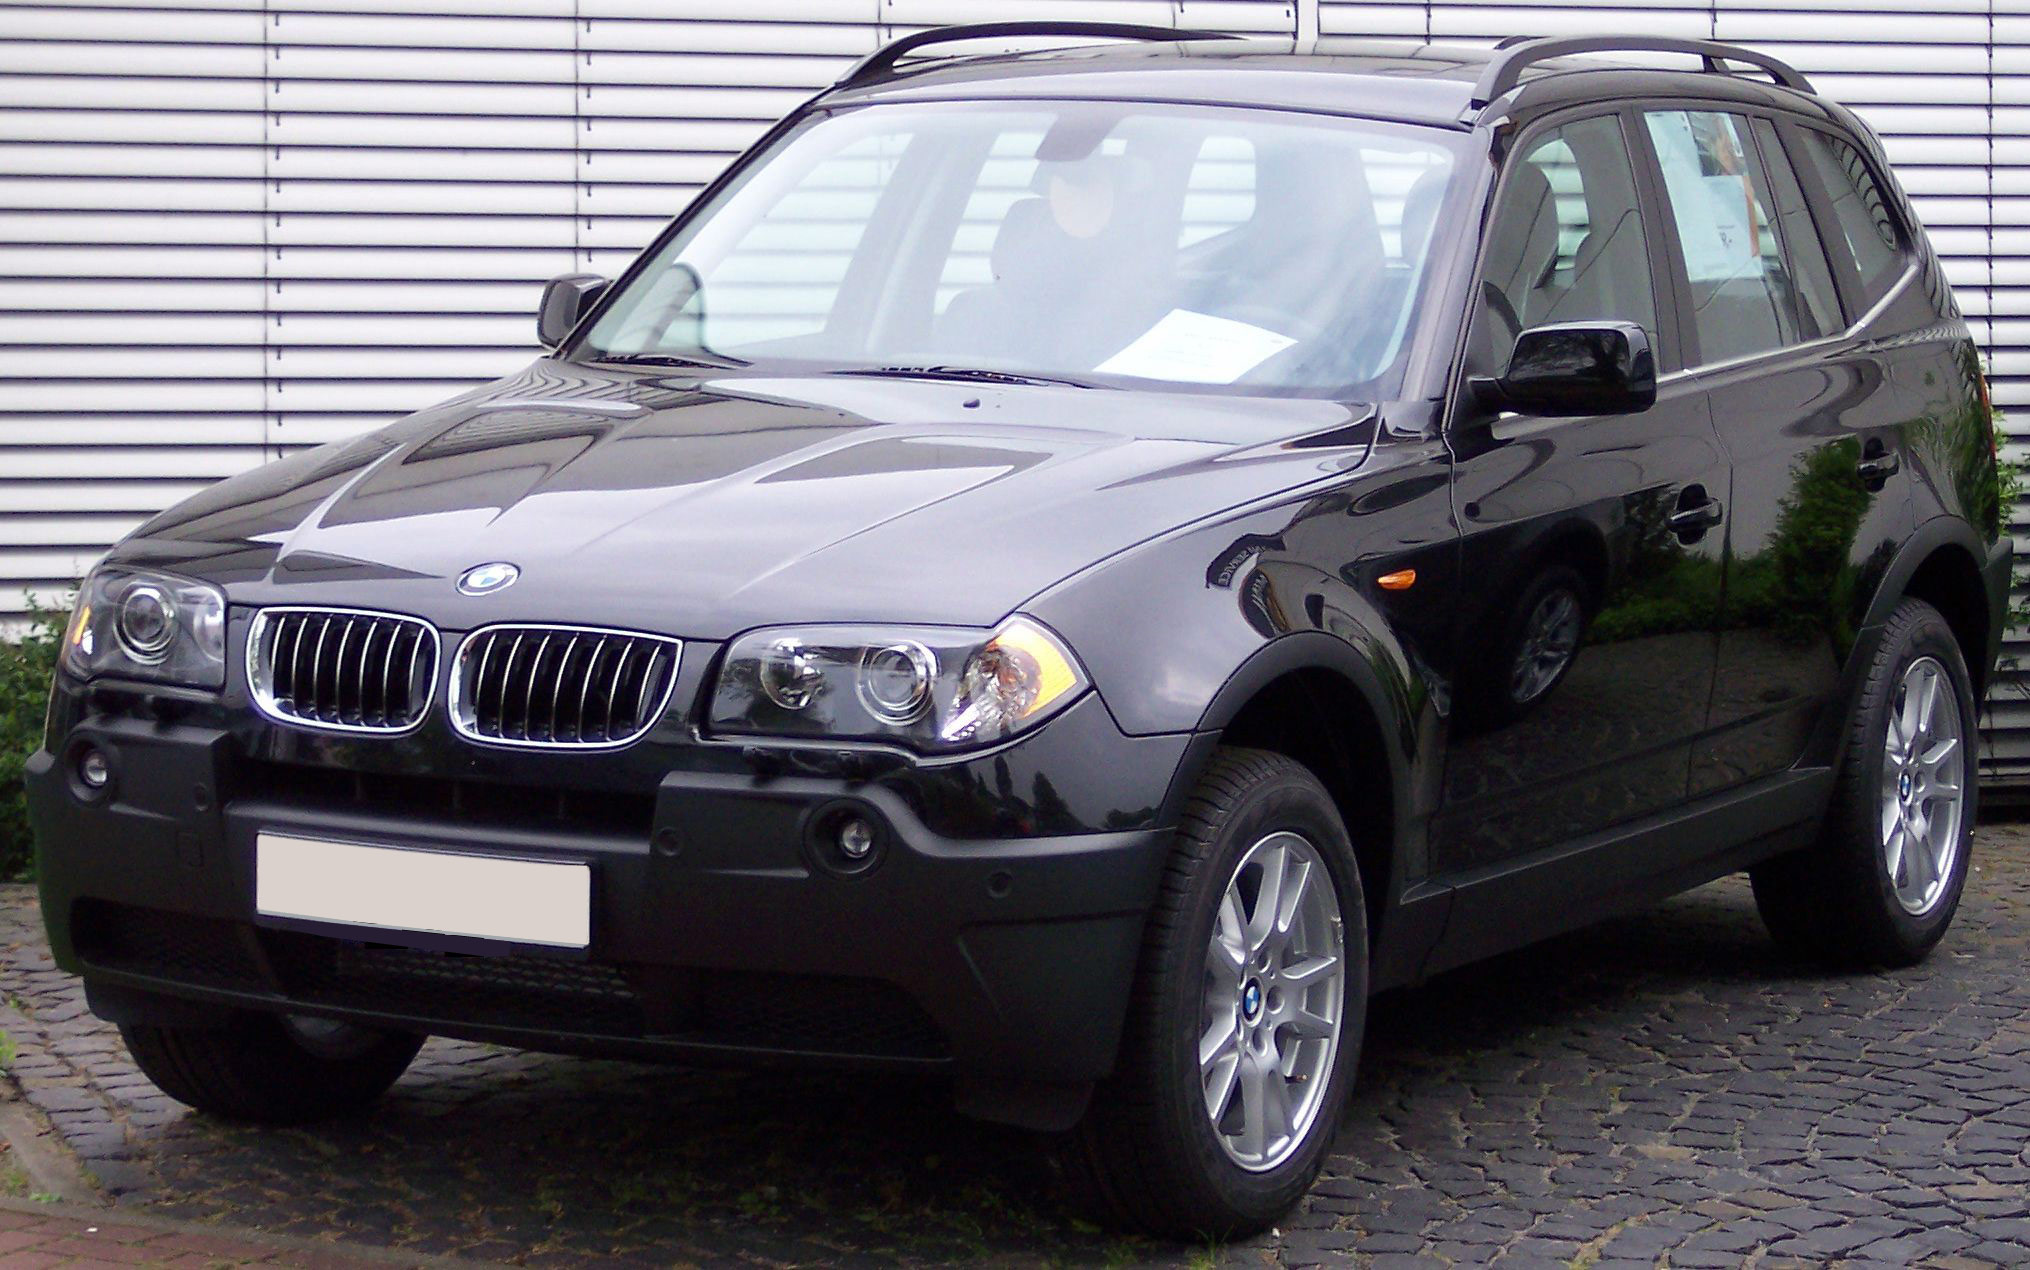 Картинки по запросу BMW X3 2010 года выпуска